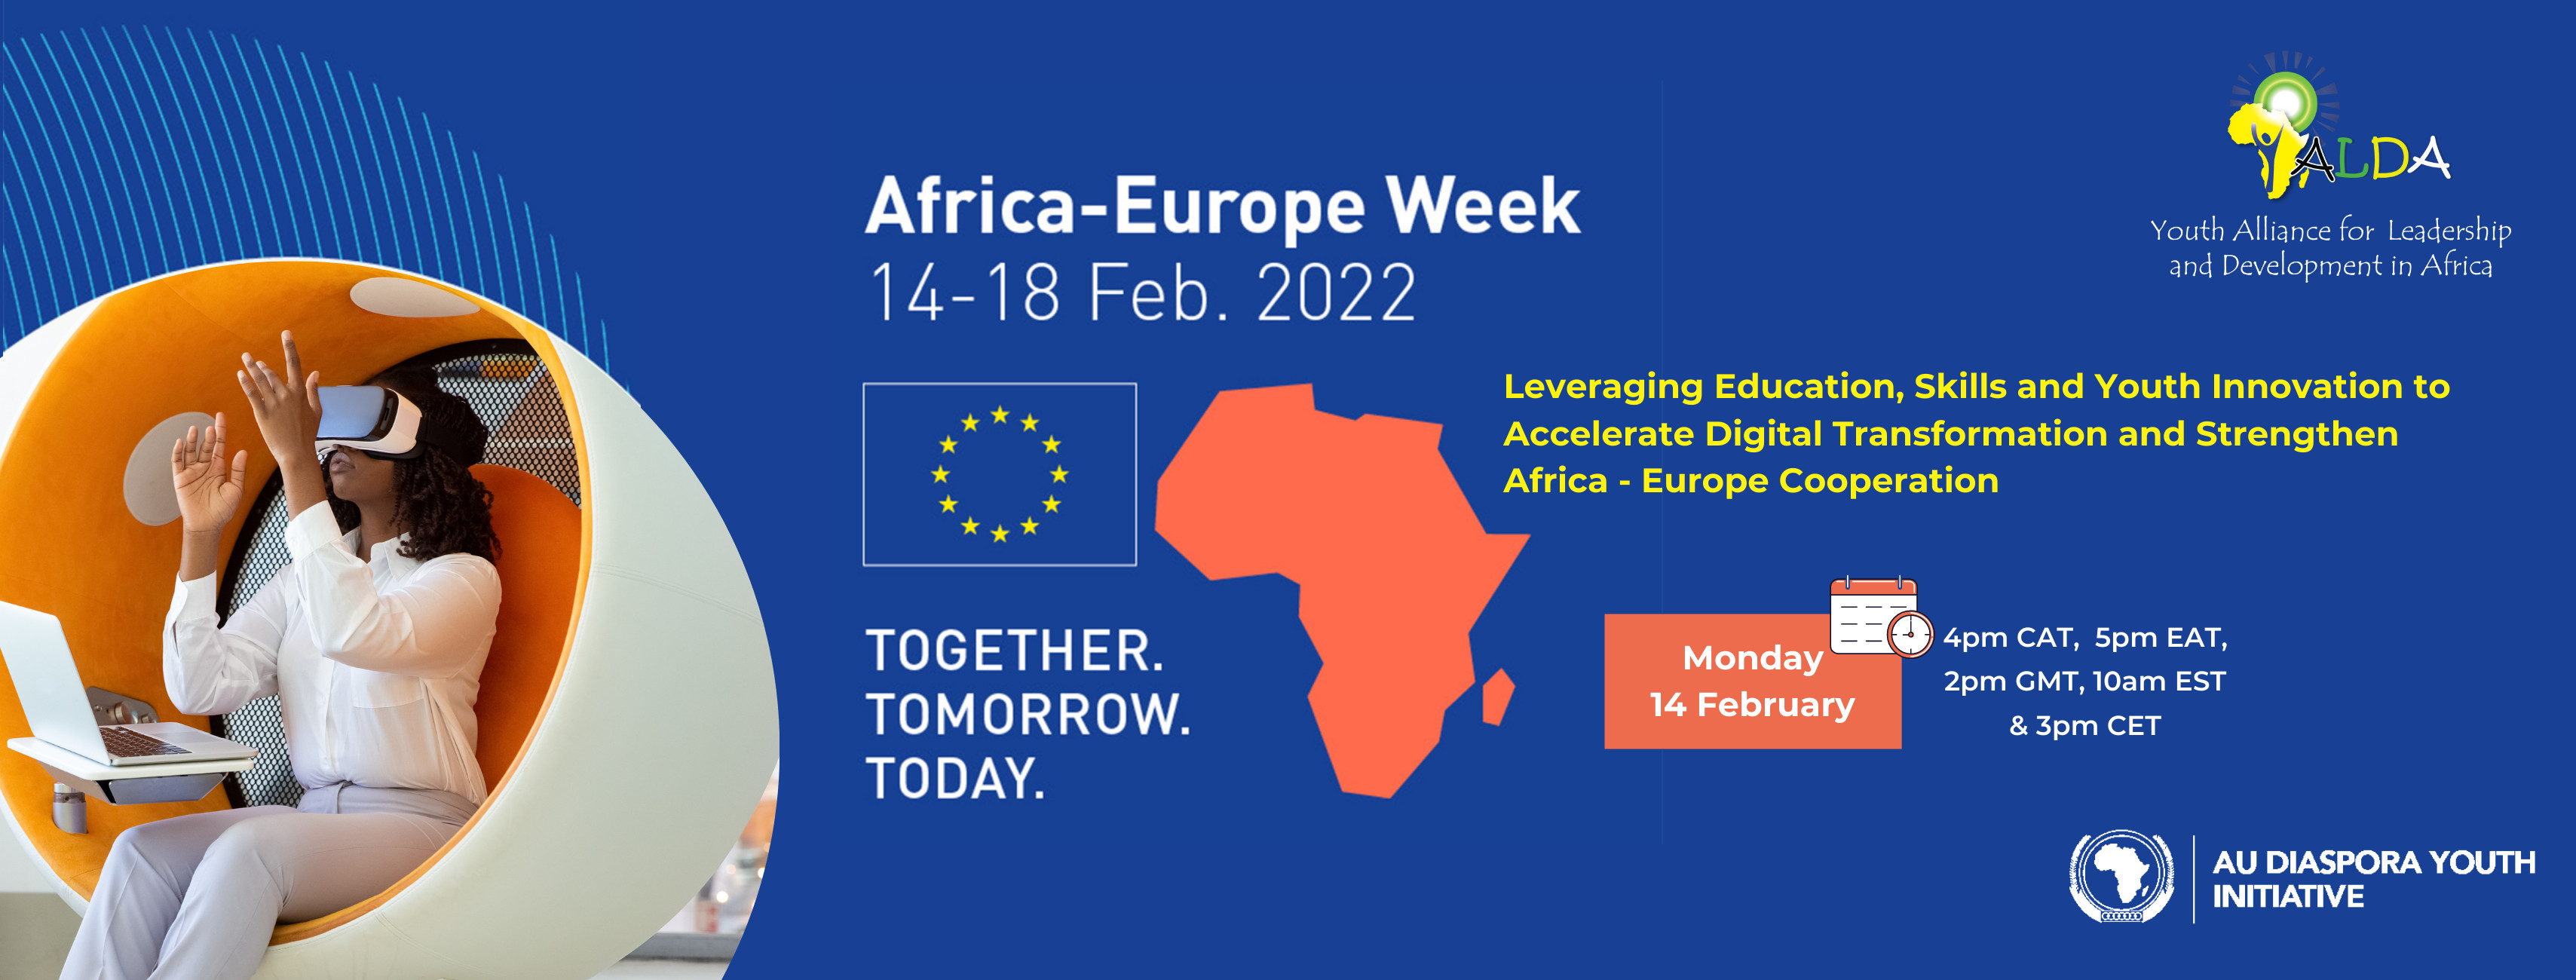 Africa-Europe Week